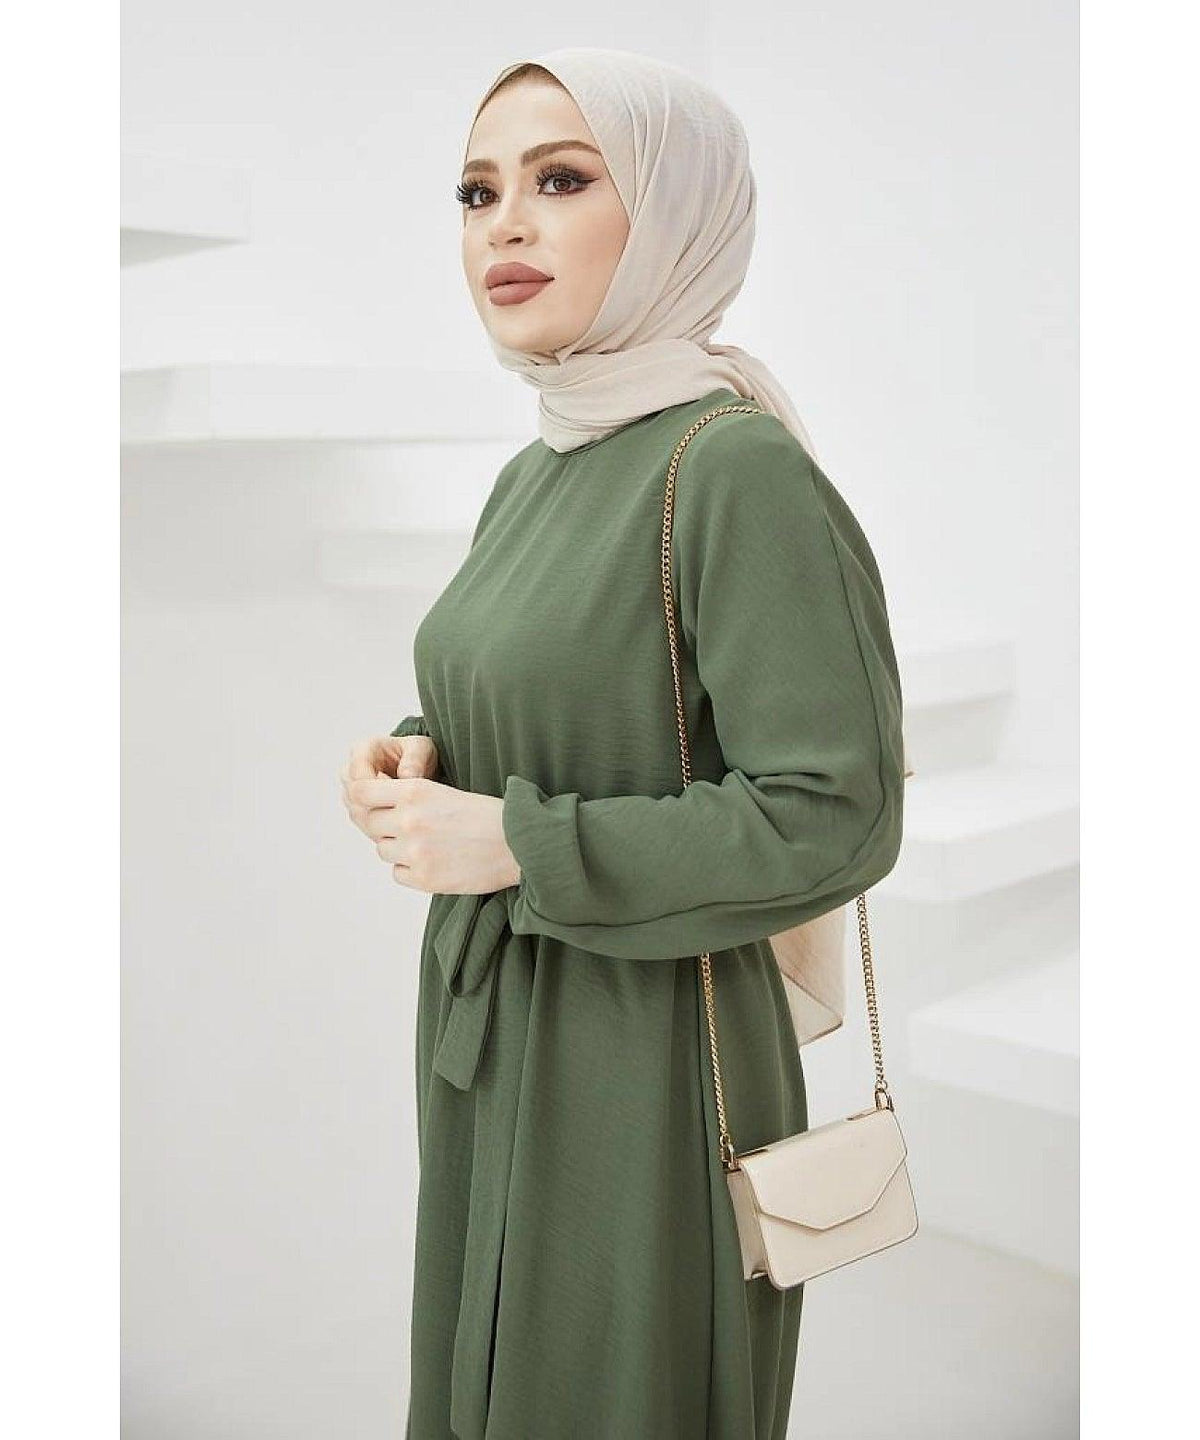 Modest Long Dubai Abaya Dress - Khaki